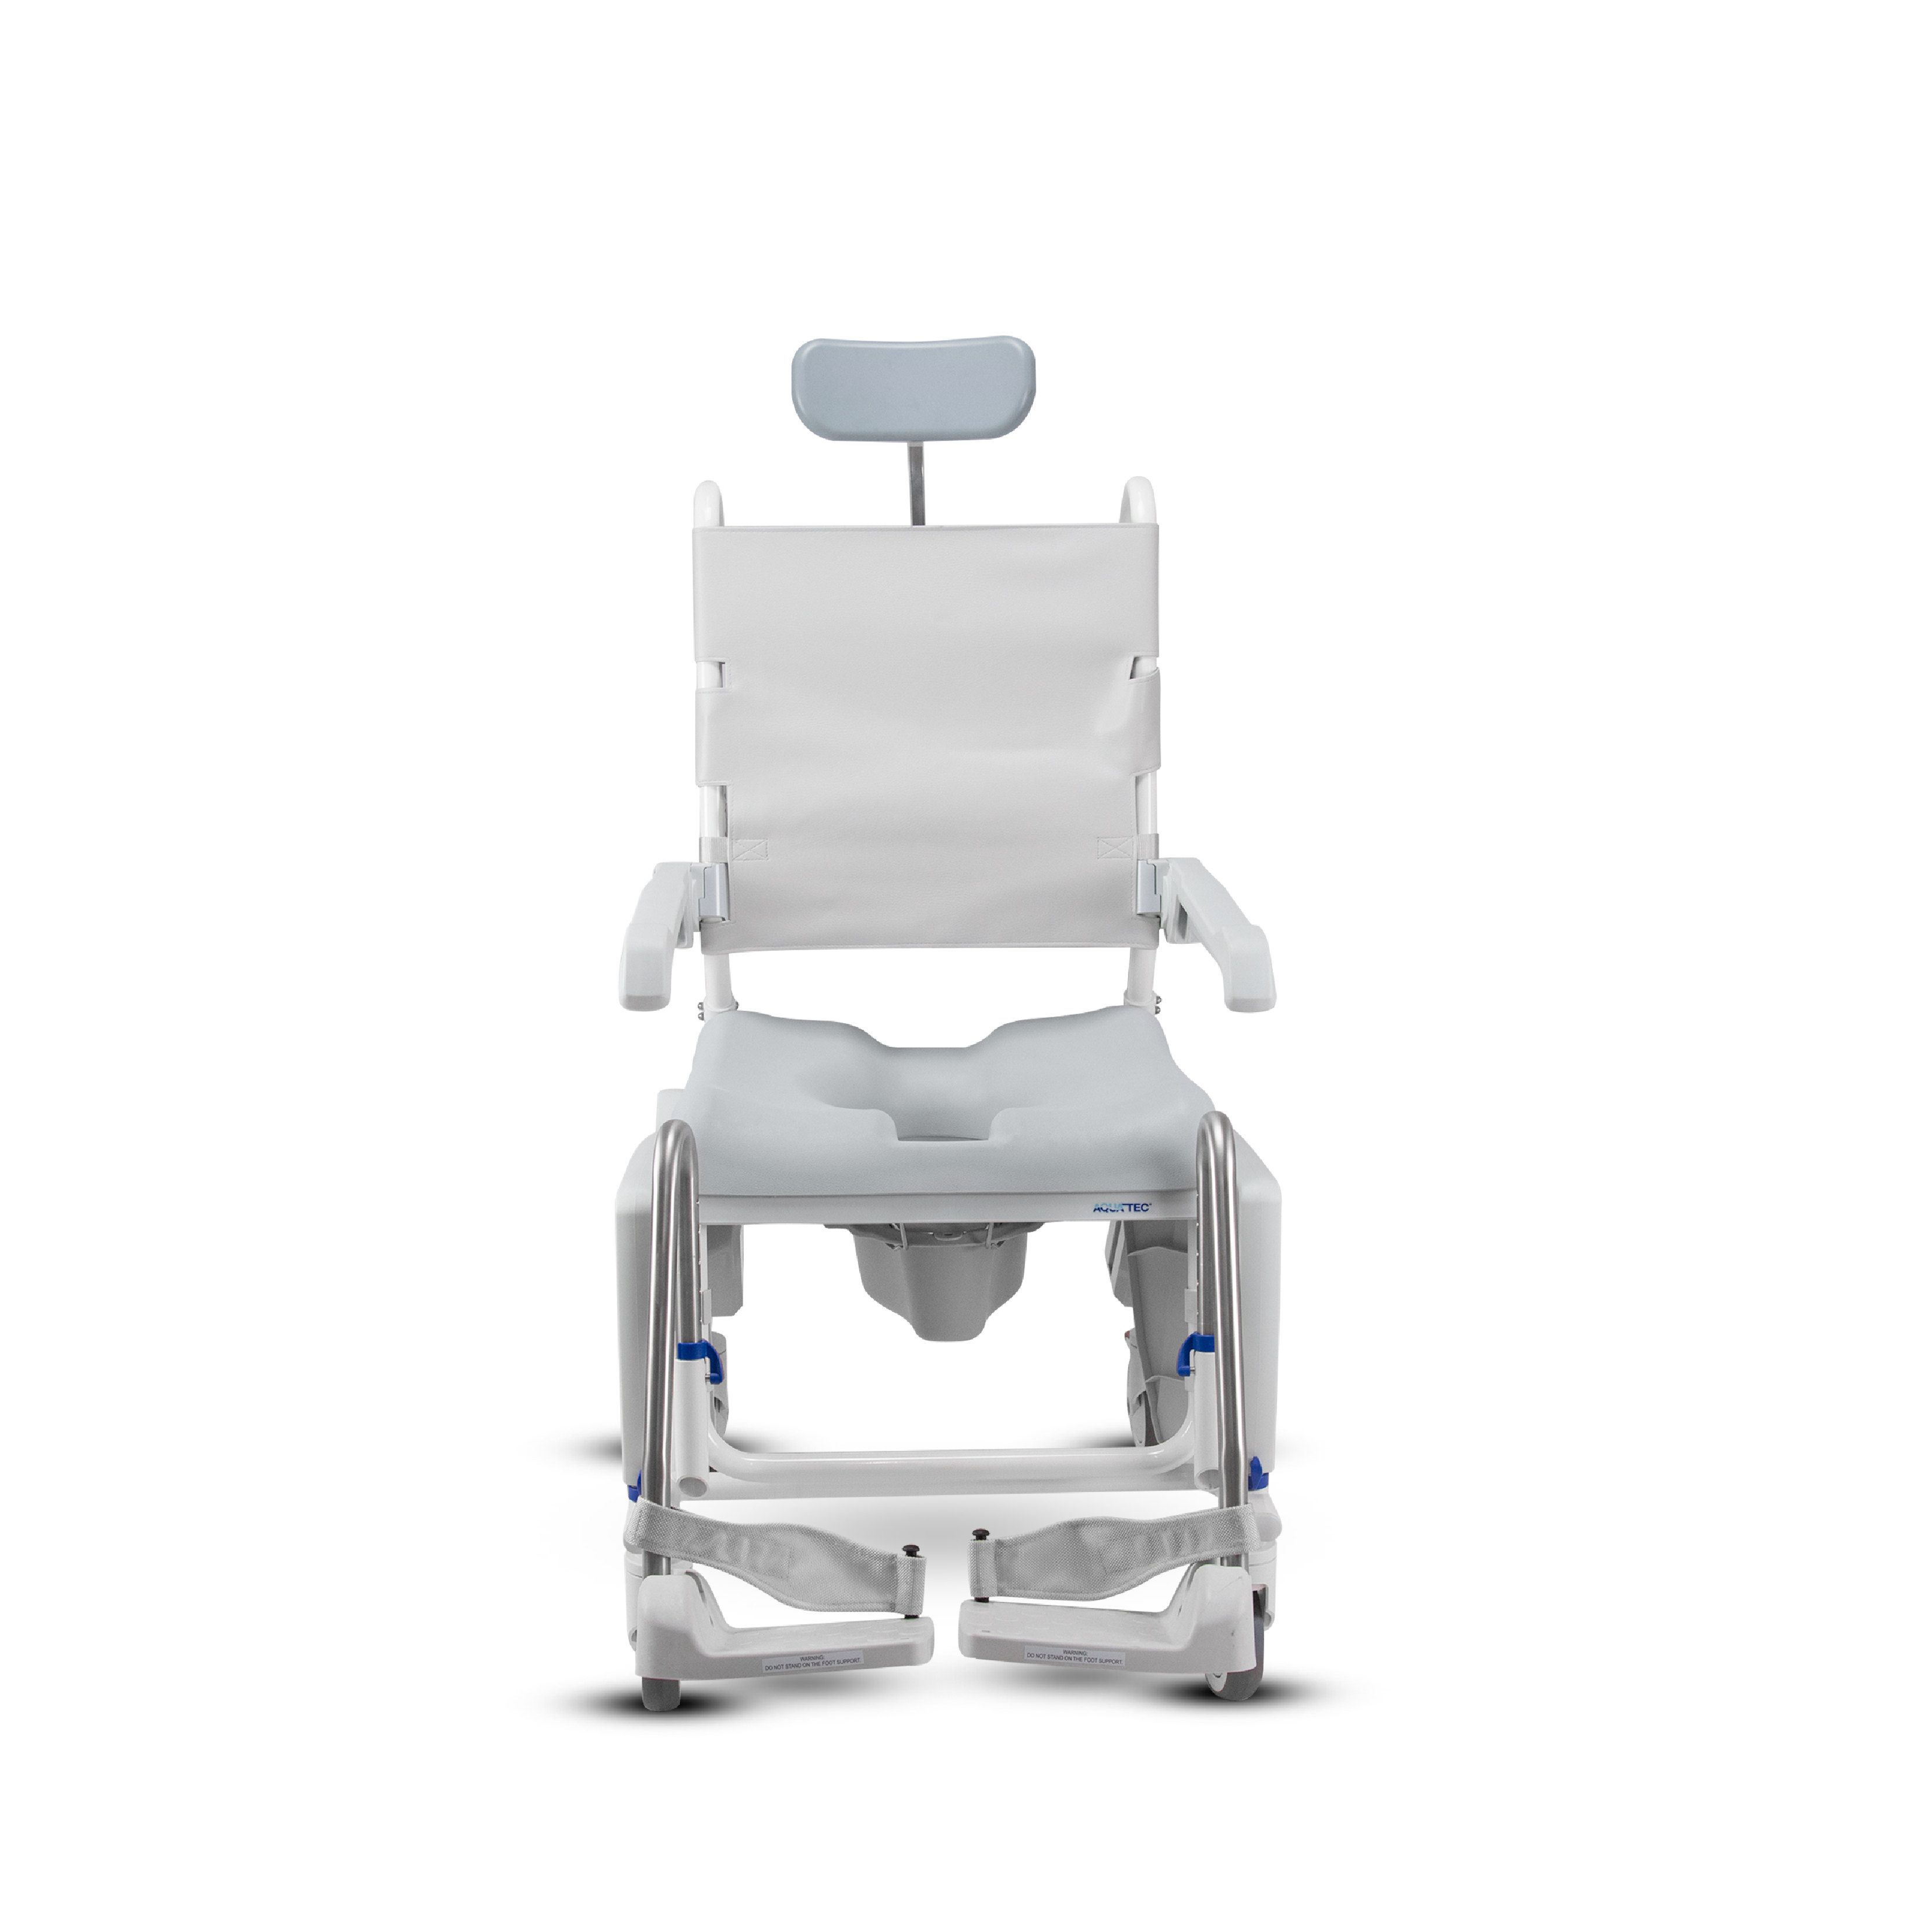 เก้าอี้รถเข็นผู้สูงอายุ Multifunction Smart Chair มีพนักพิงศีรษะ ปรับเอนหลังได้ 0-35 องศา สำหรับใช้งานอเนกประสงค์ภายในบ้าน